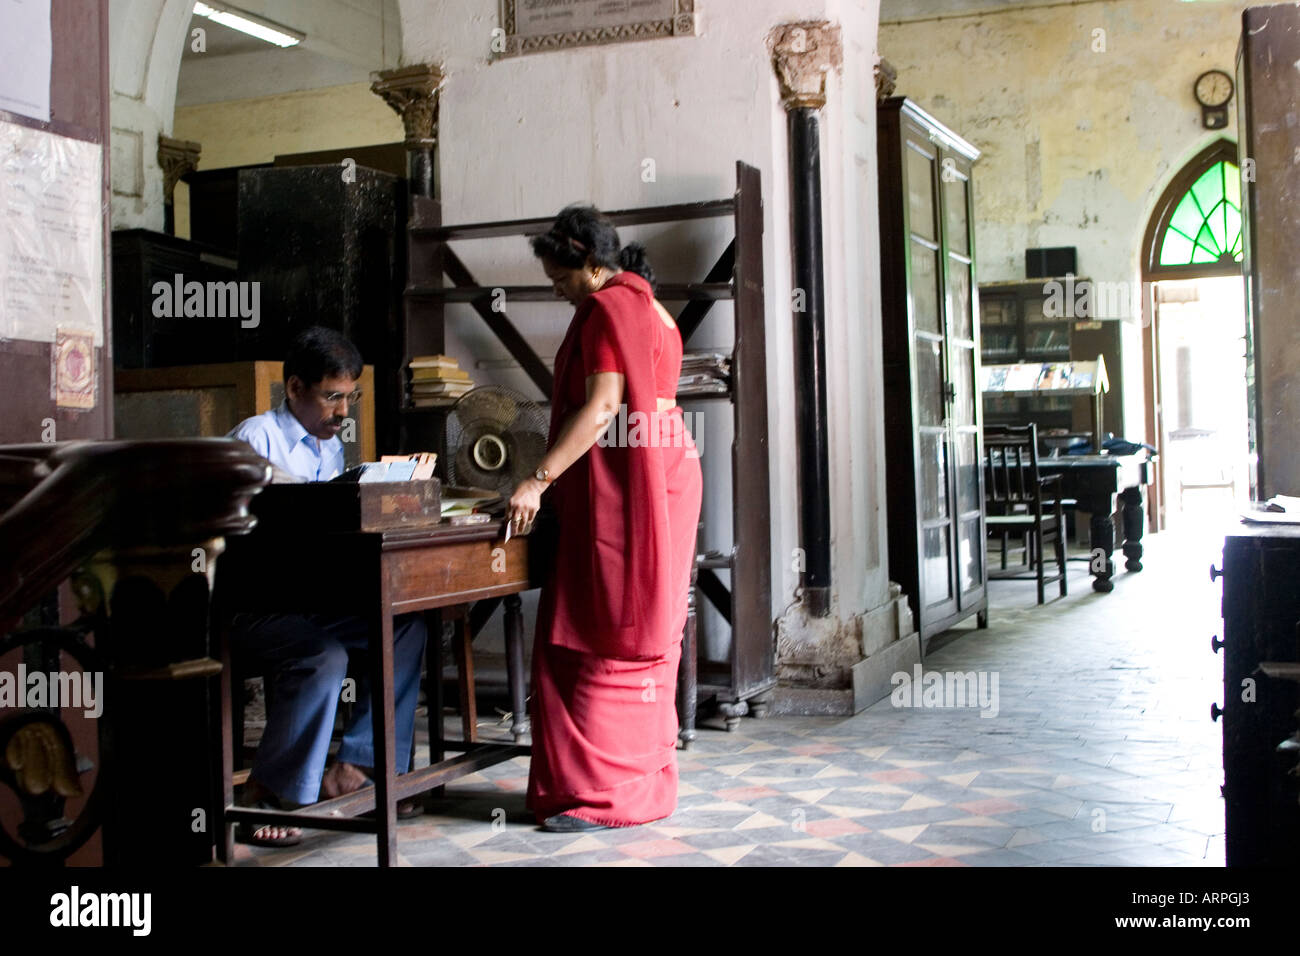 Mumbai, Bombay, India, Asia. David Sassoon Library Stock Photo